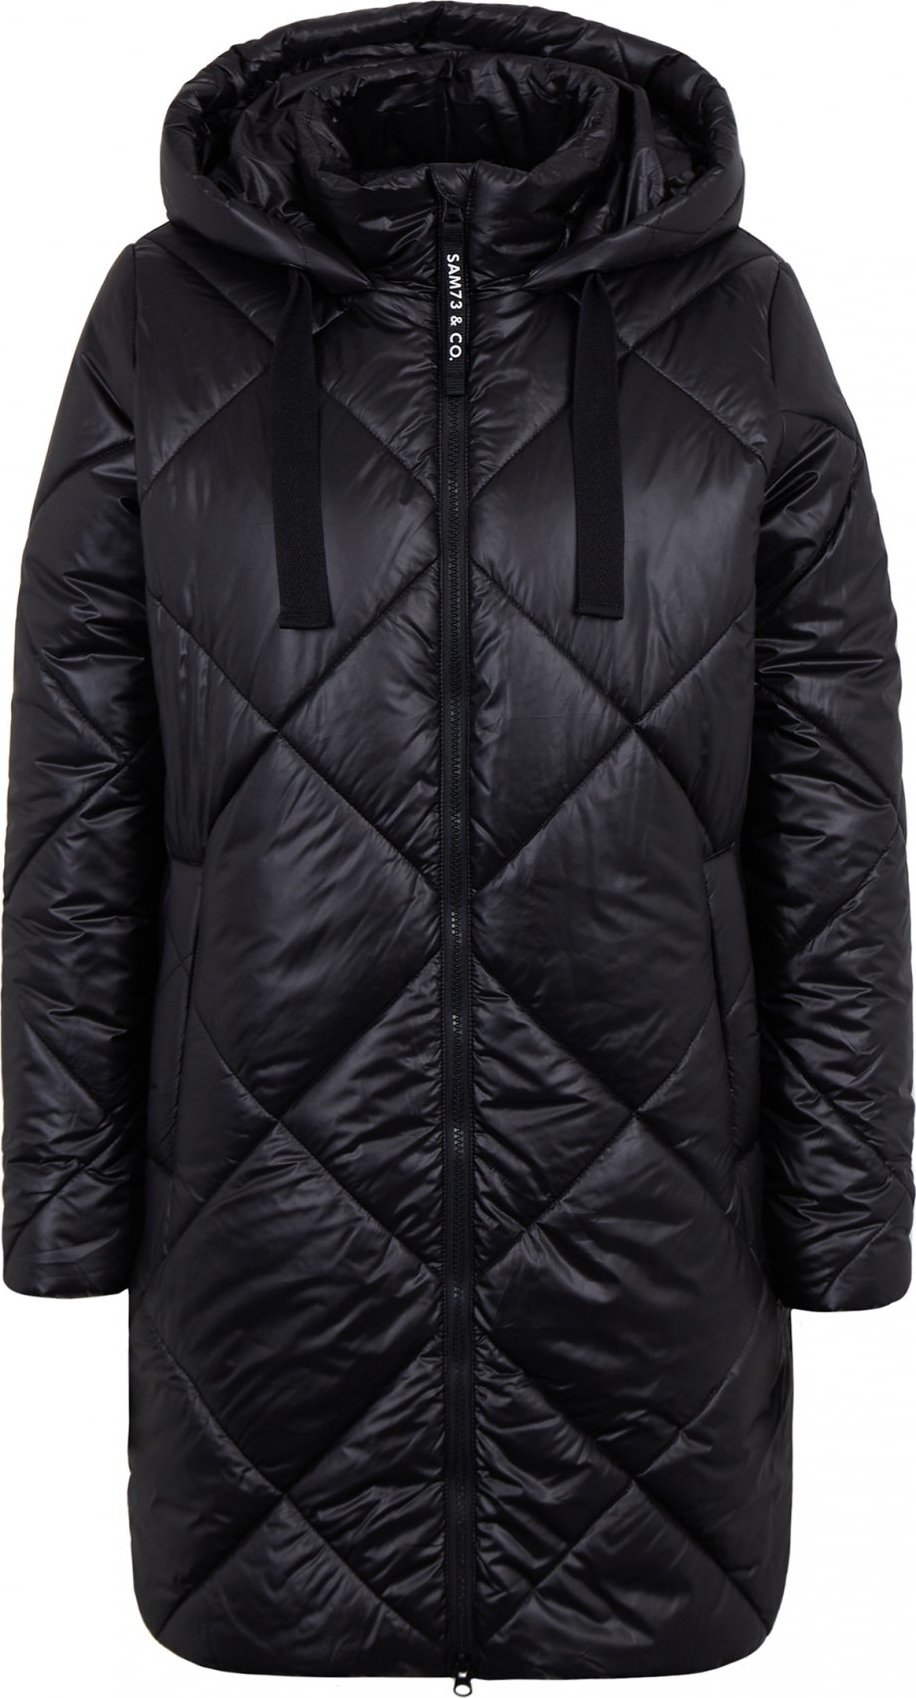 Dámský zimní kabát SAM 73 Clarice černý Velikost: XL